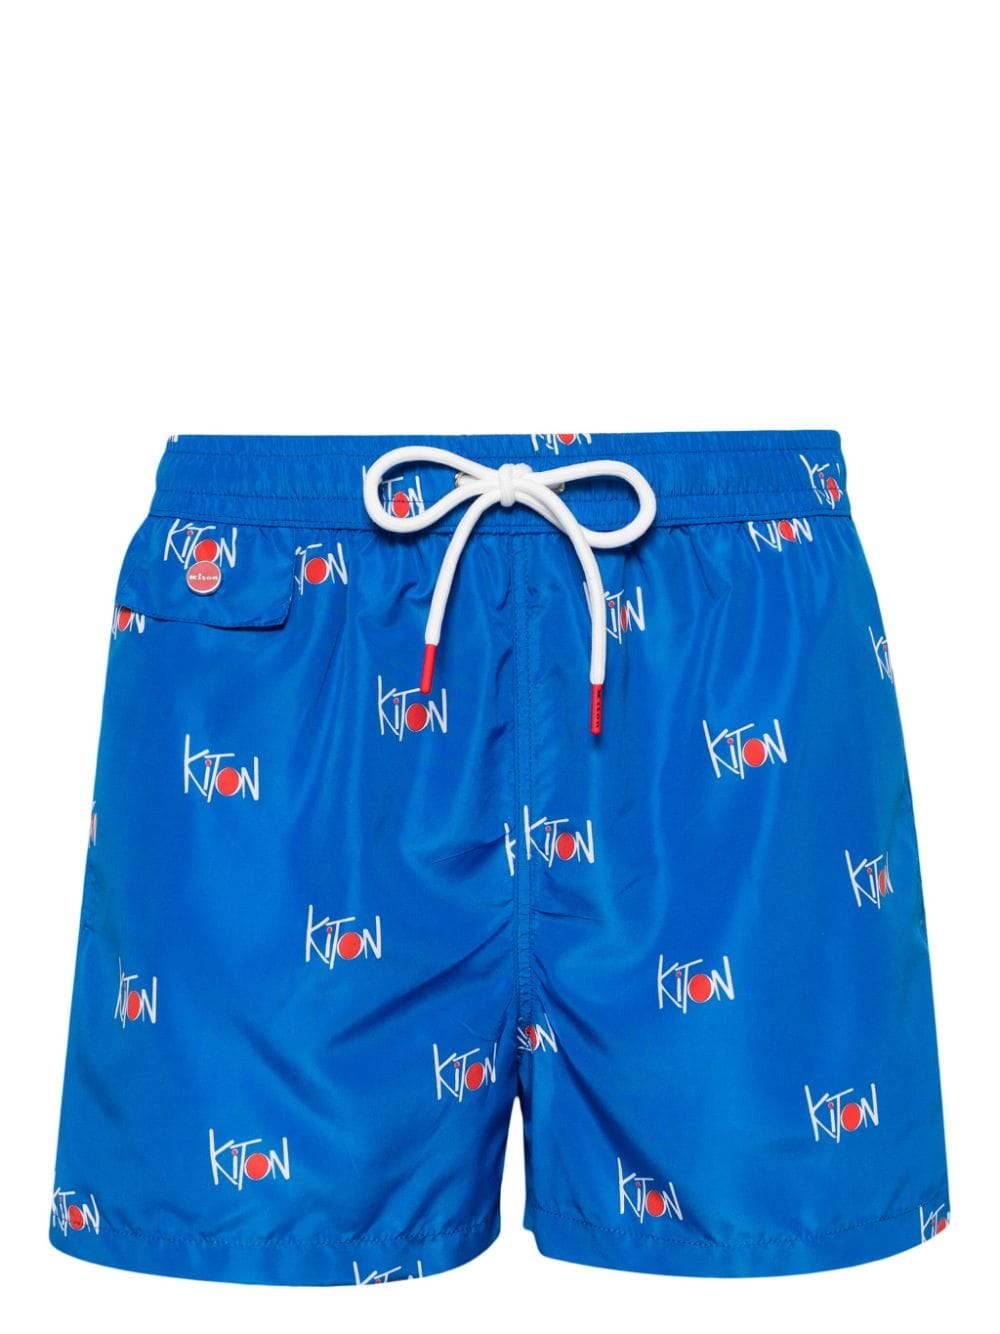 Kiton all-over logo printed swim shorts - Blue von Kiton